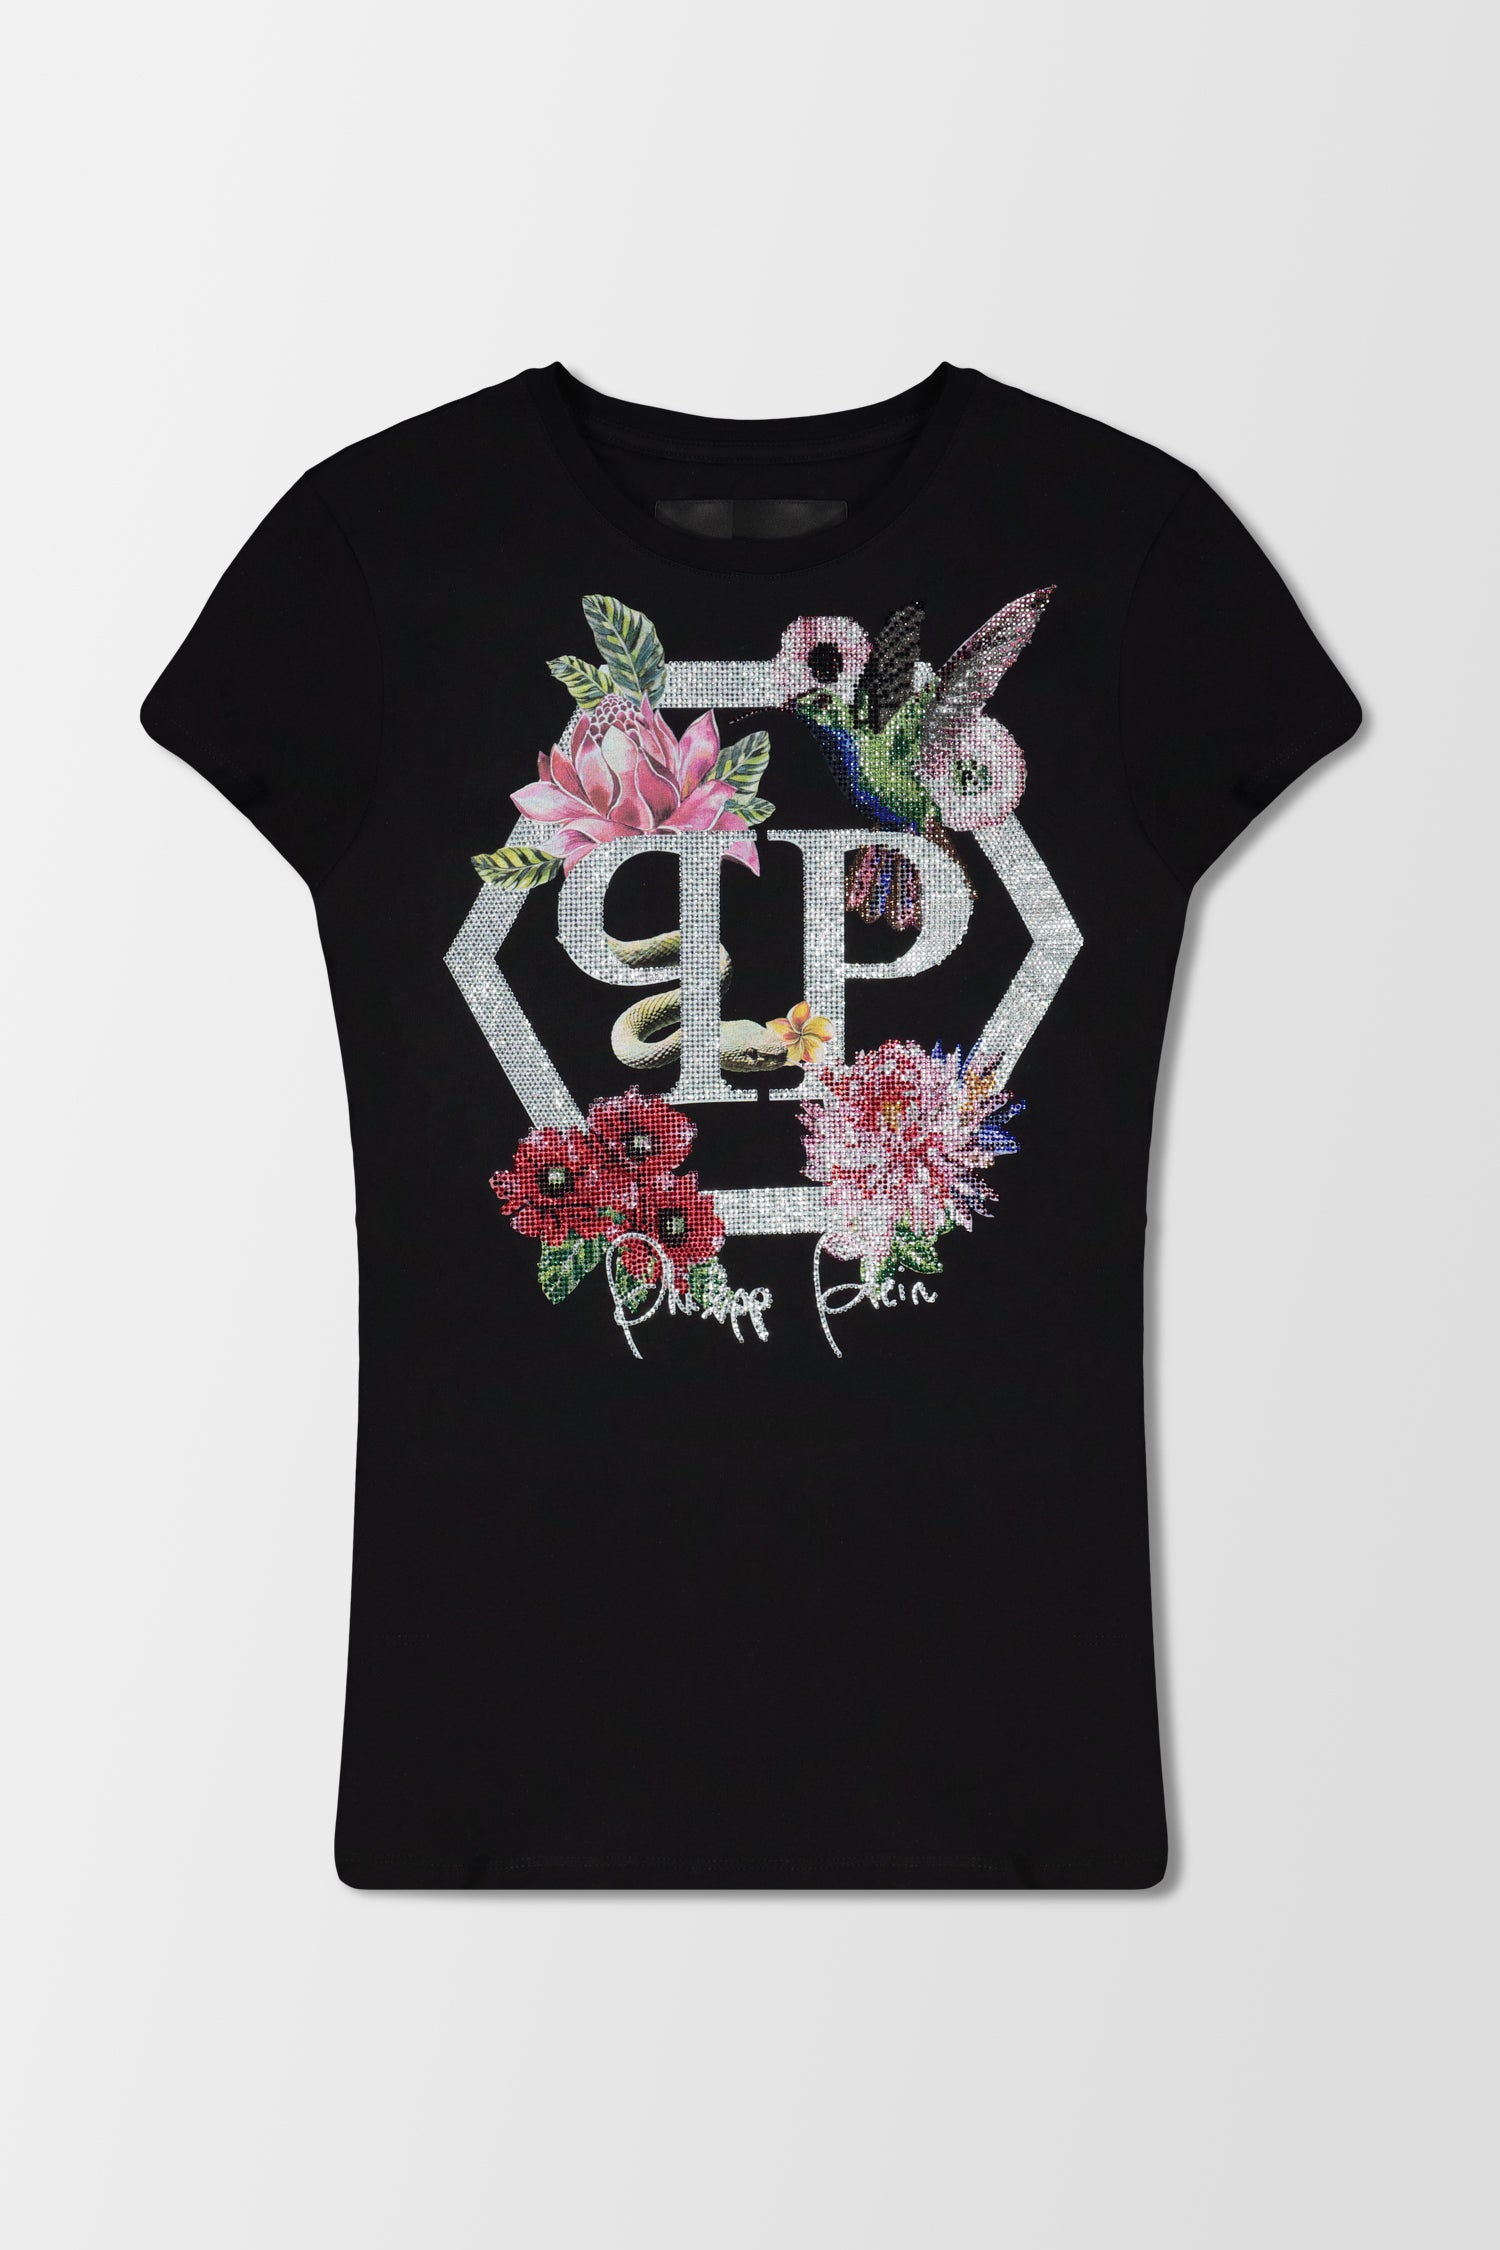 Philipp Plein Black Round Neck SS Flowers 2 T-Shirt